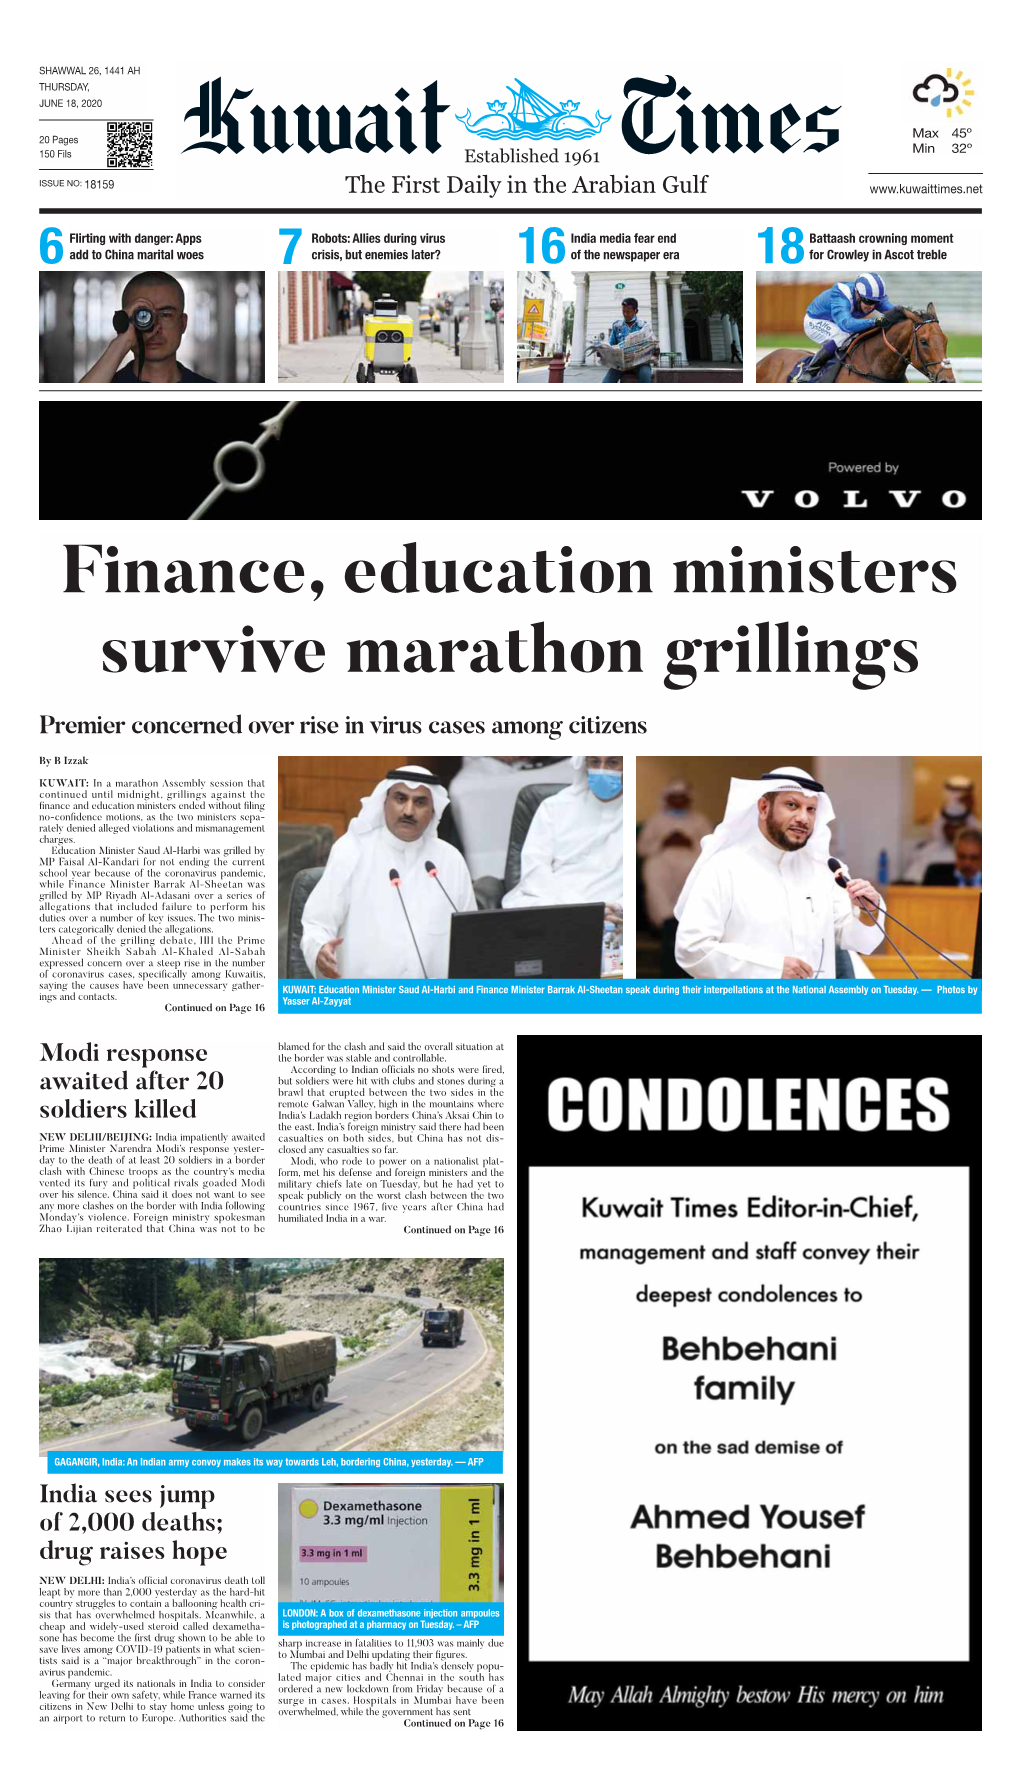 Finance, Education Ministers Survive Marathon Grillings